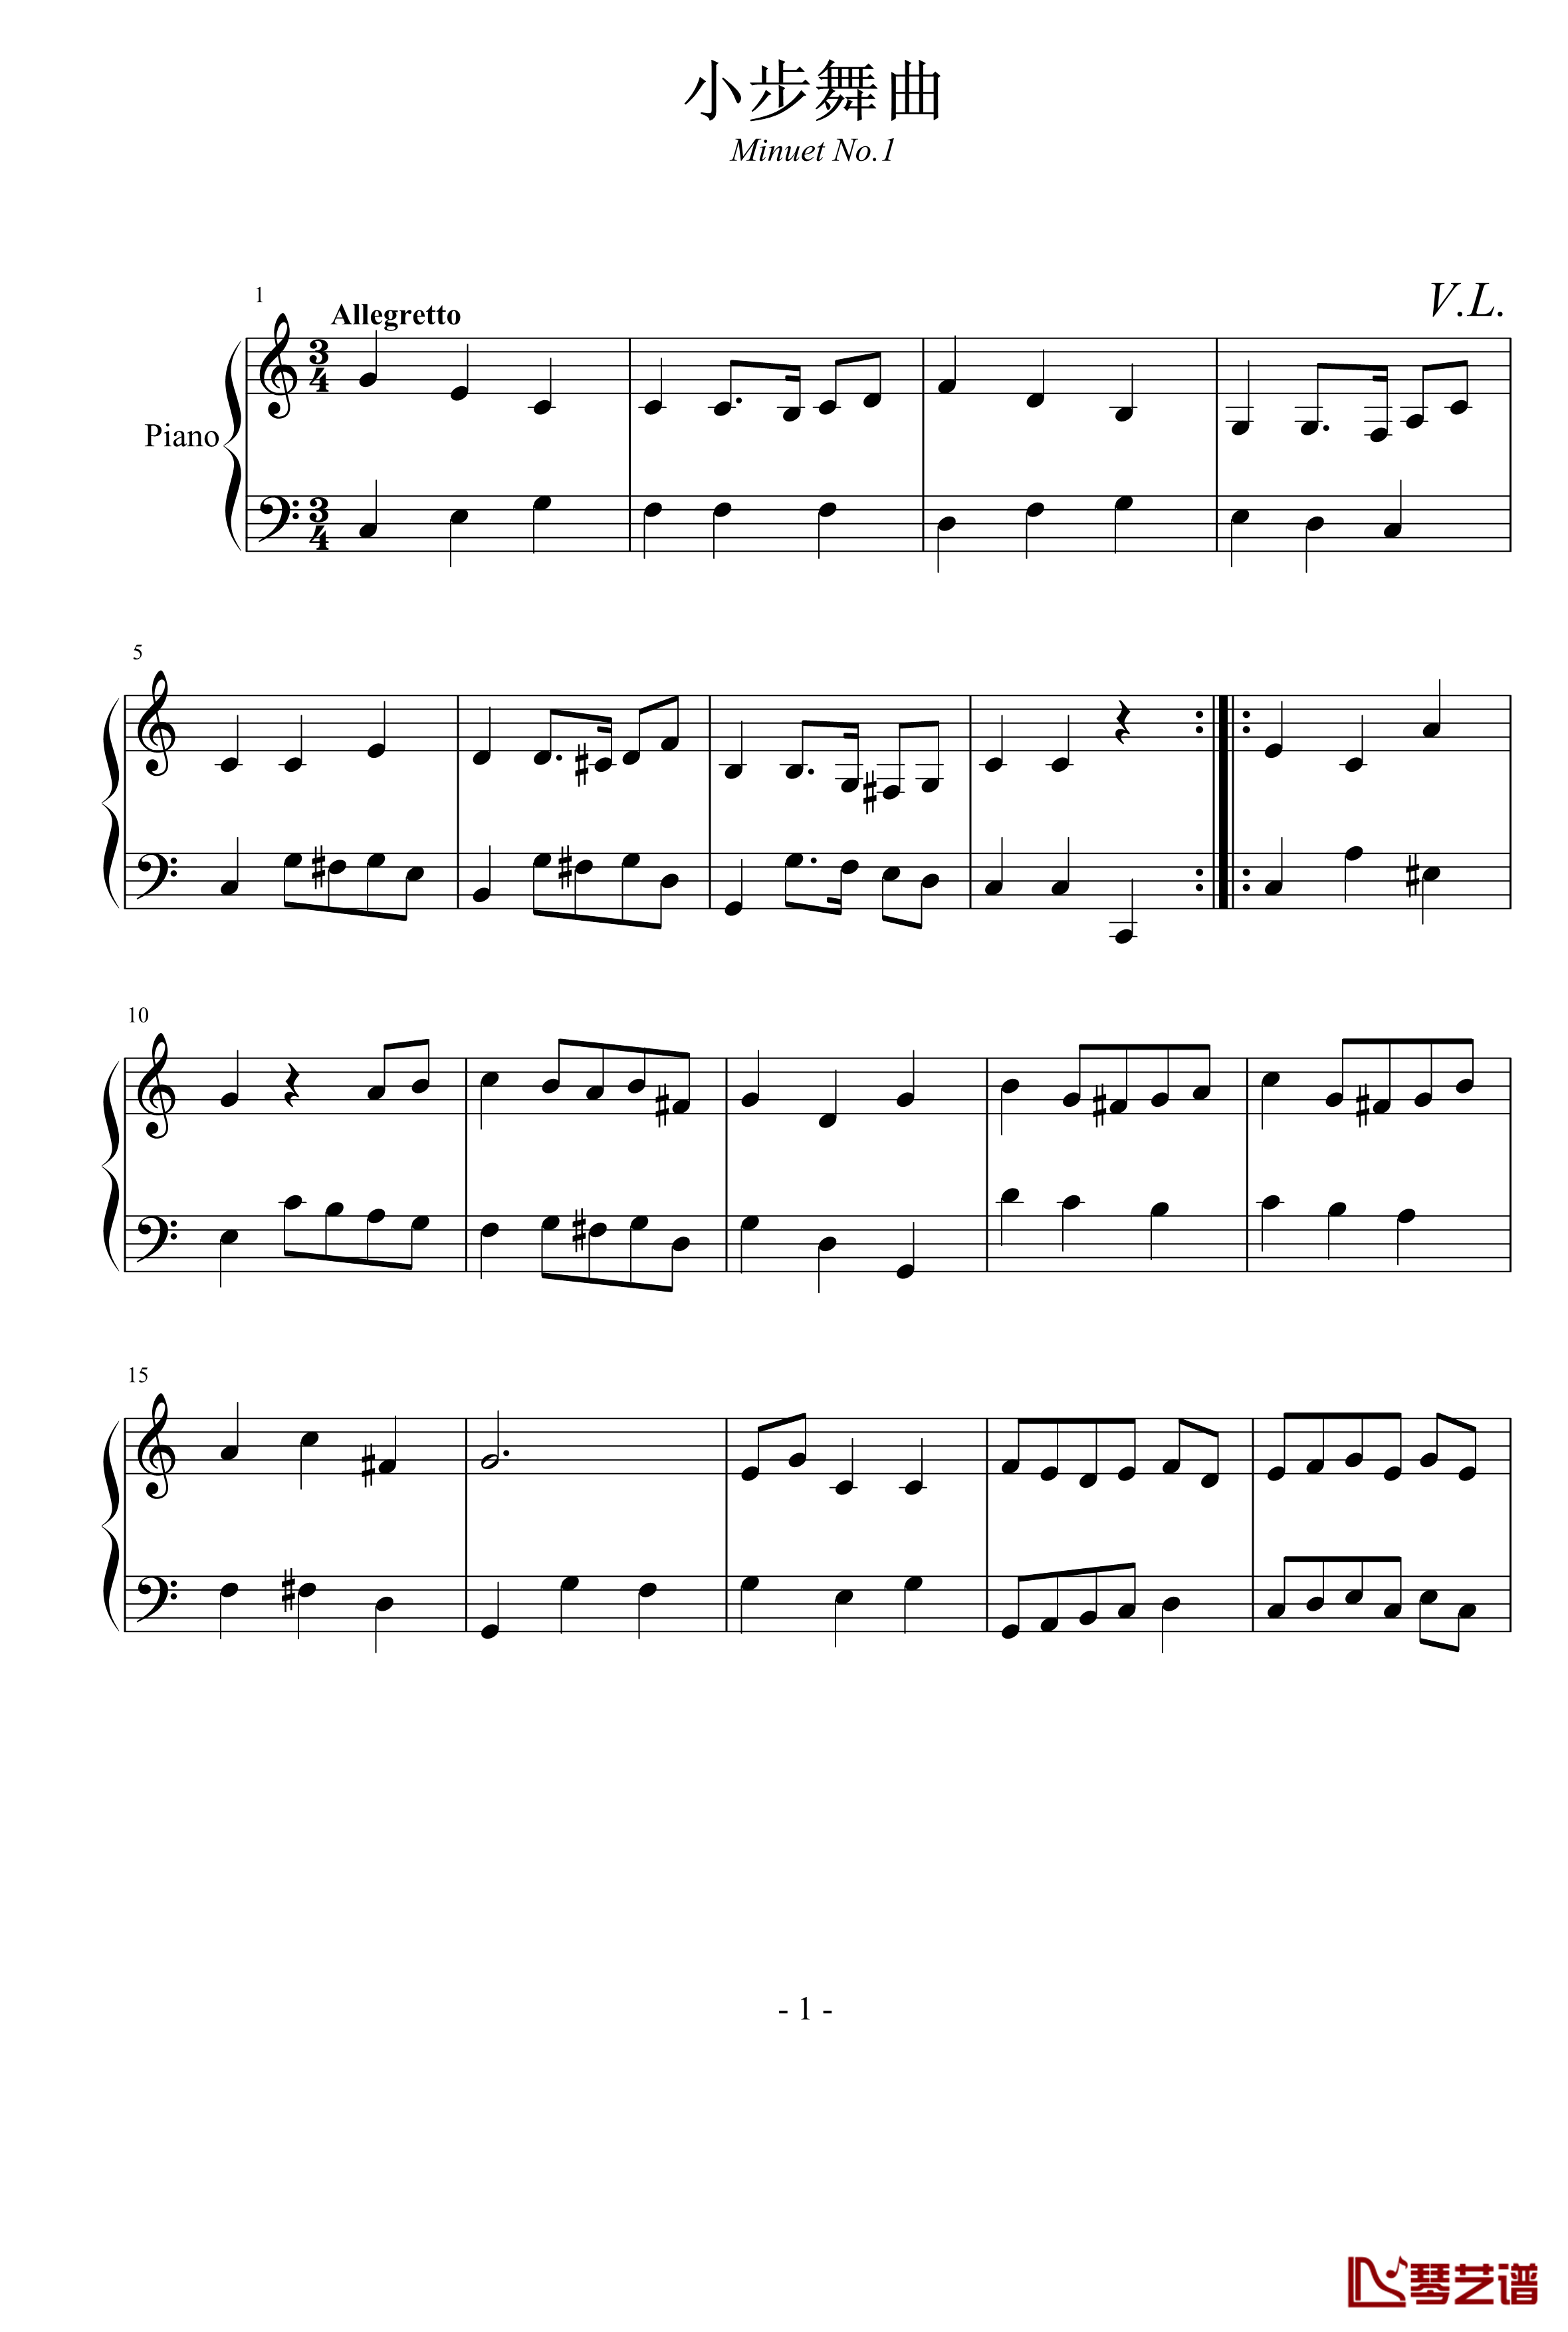 第一小步舞曲钢琴谱-zzmx09161